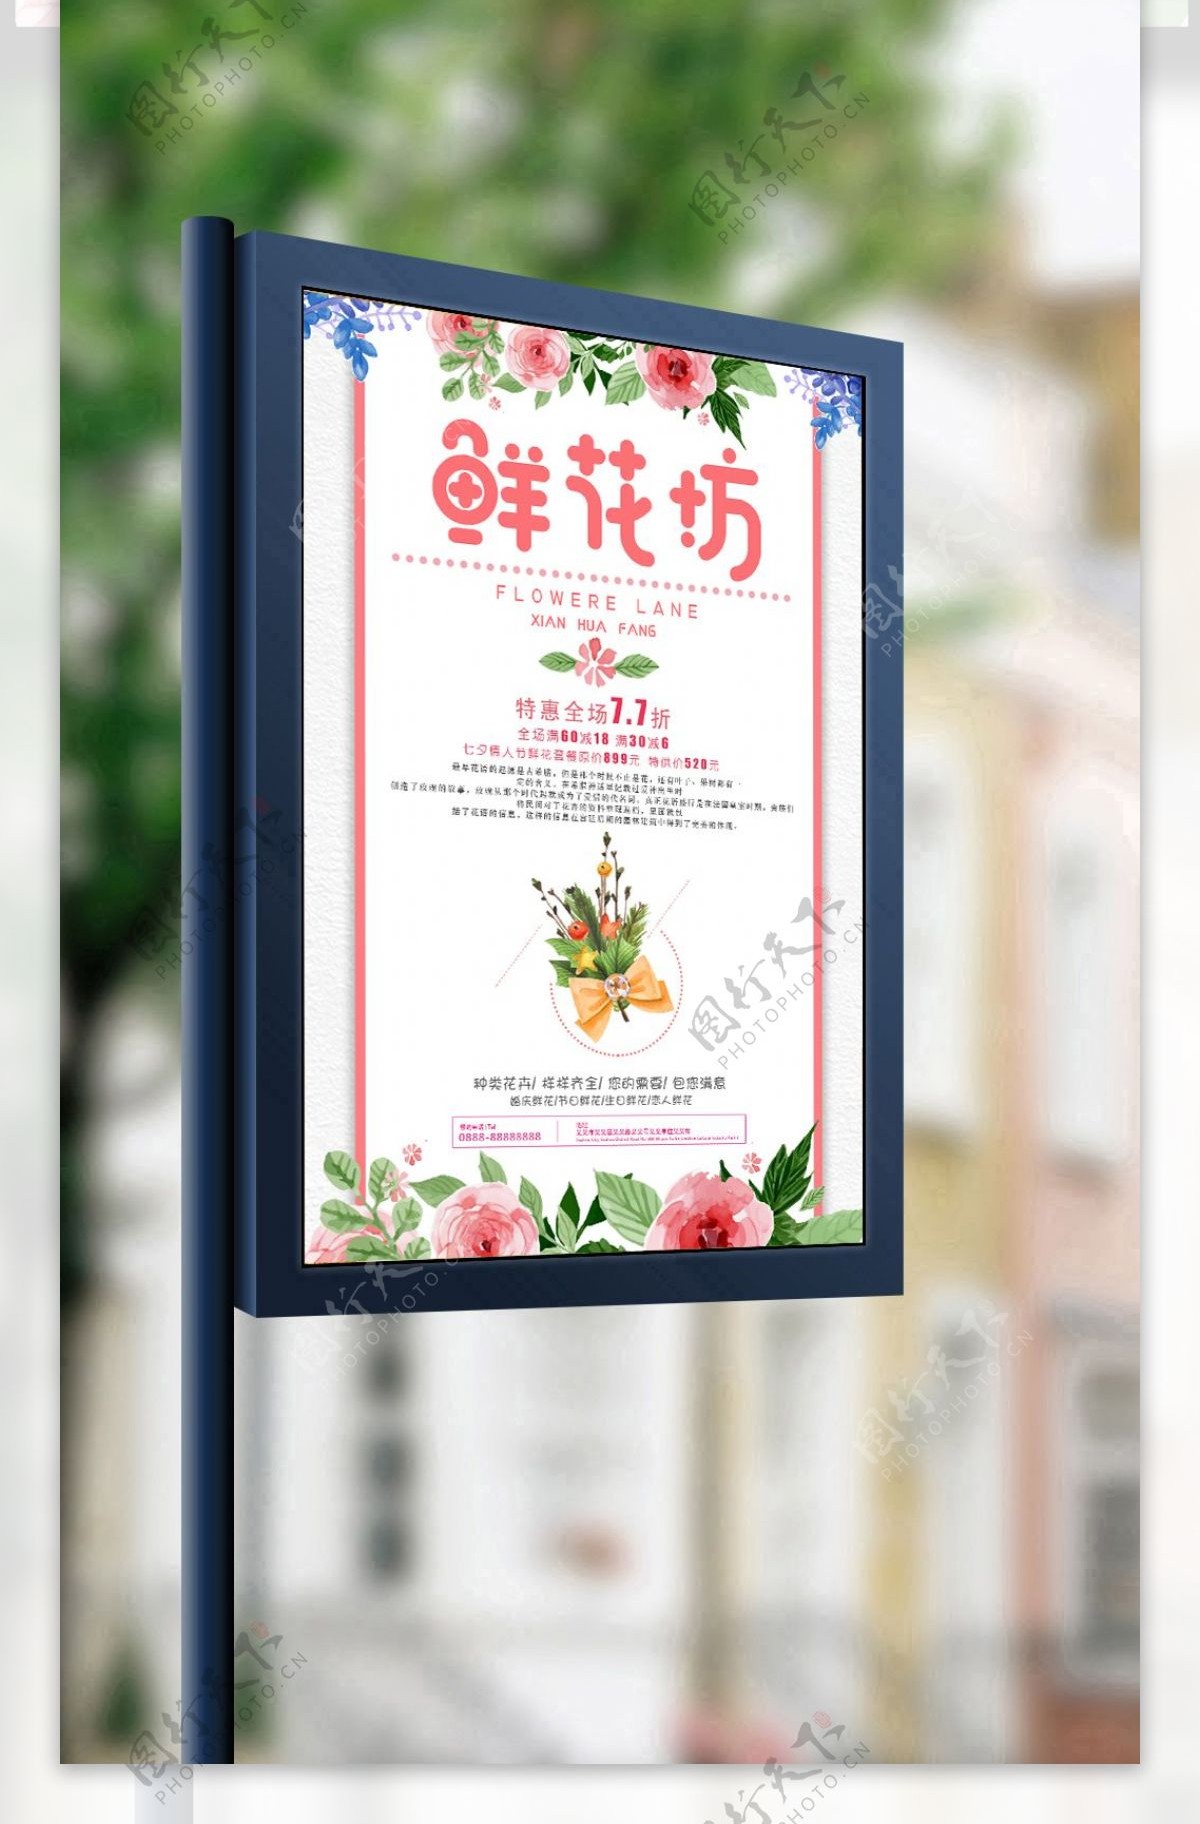 2017粉色鲜花工坊海报设计